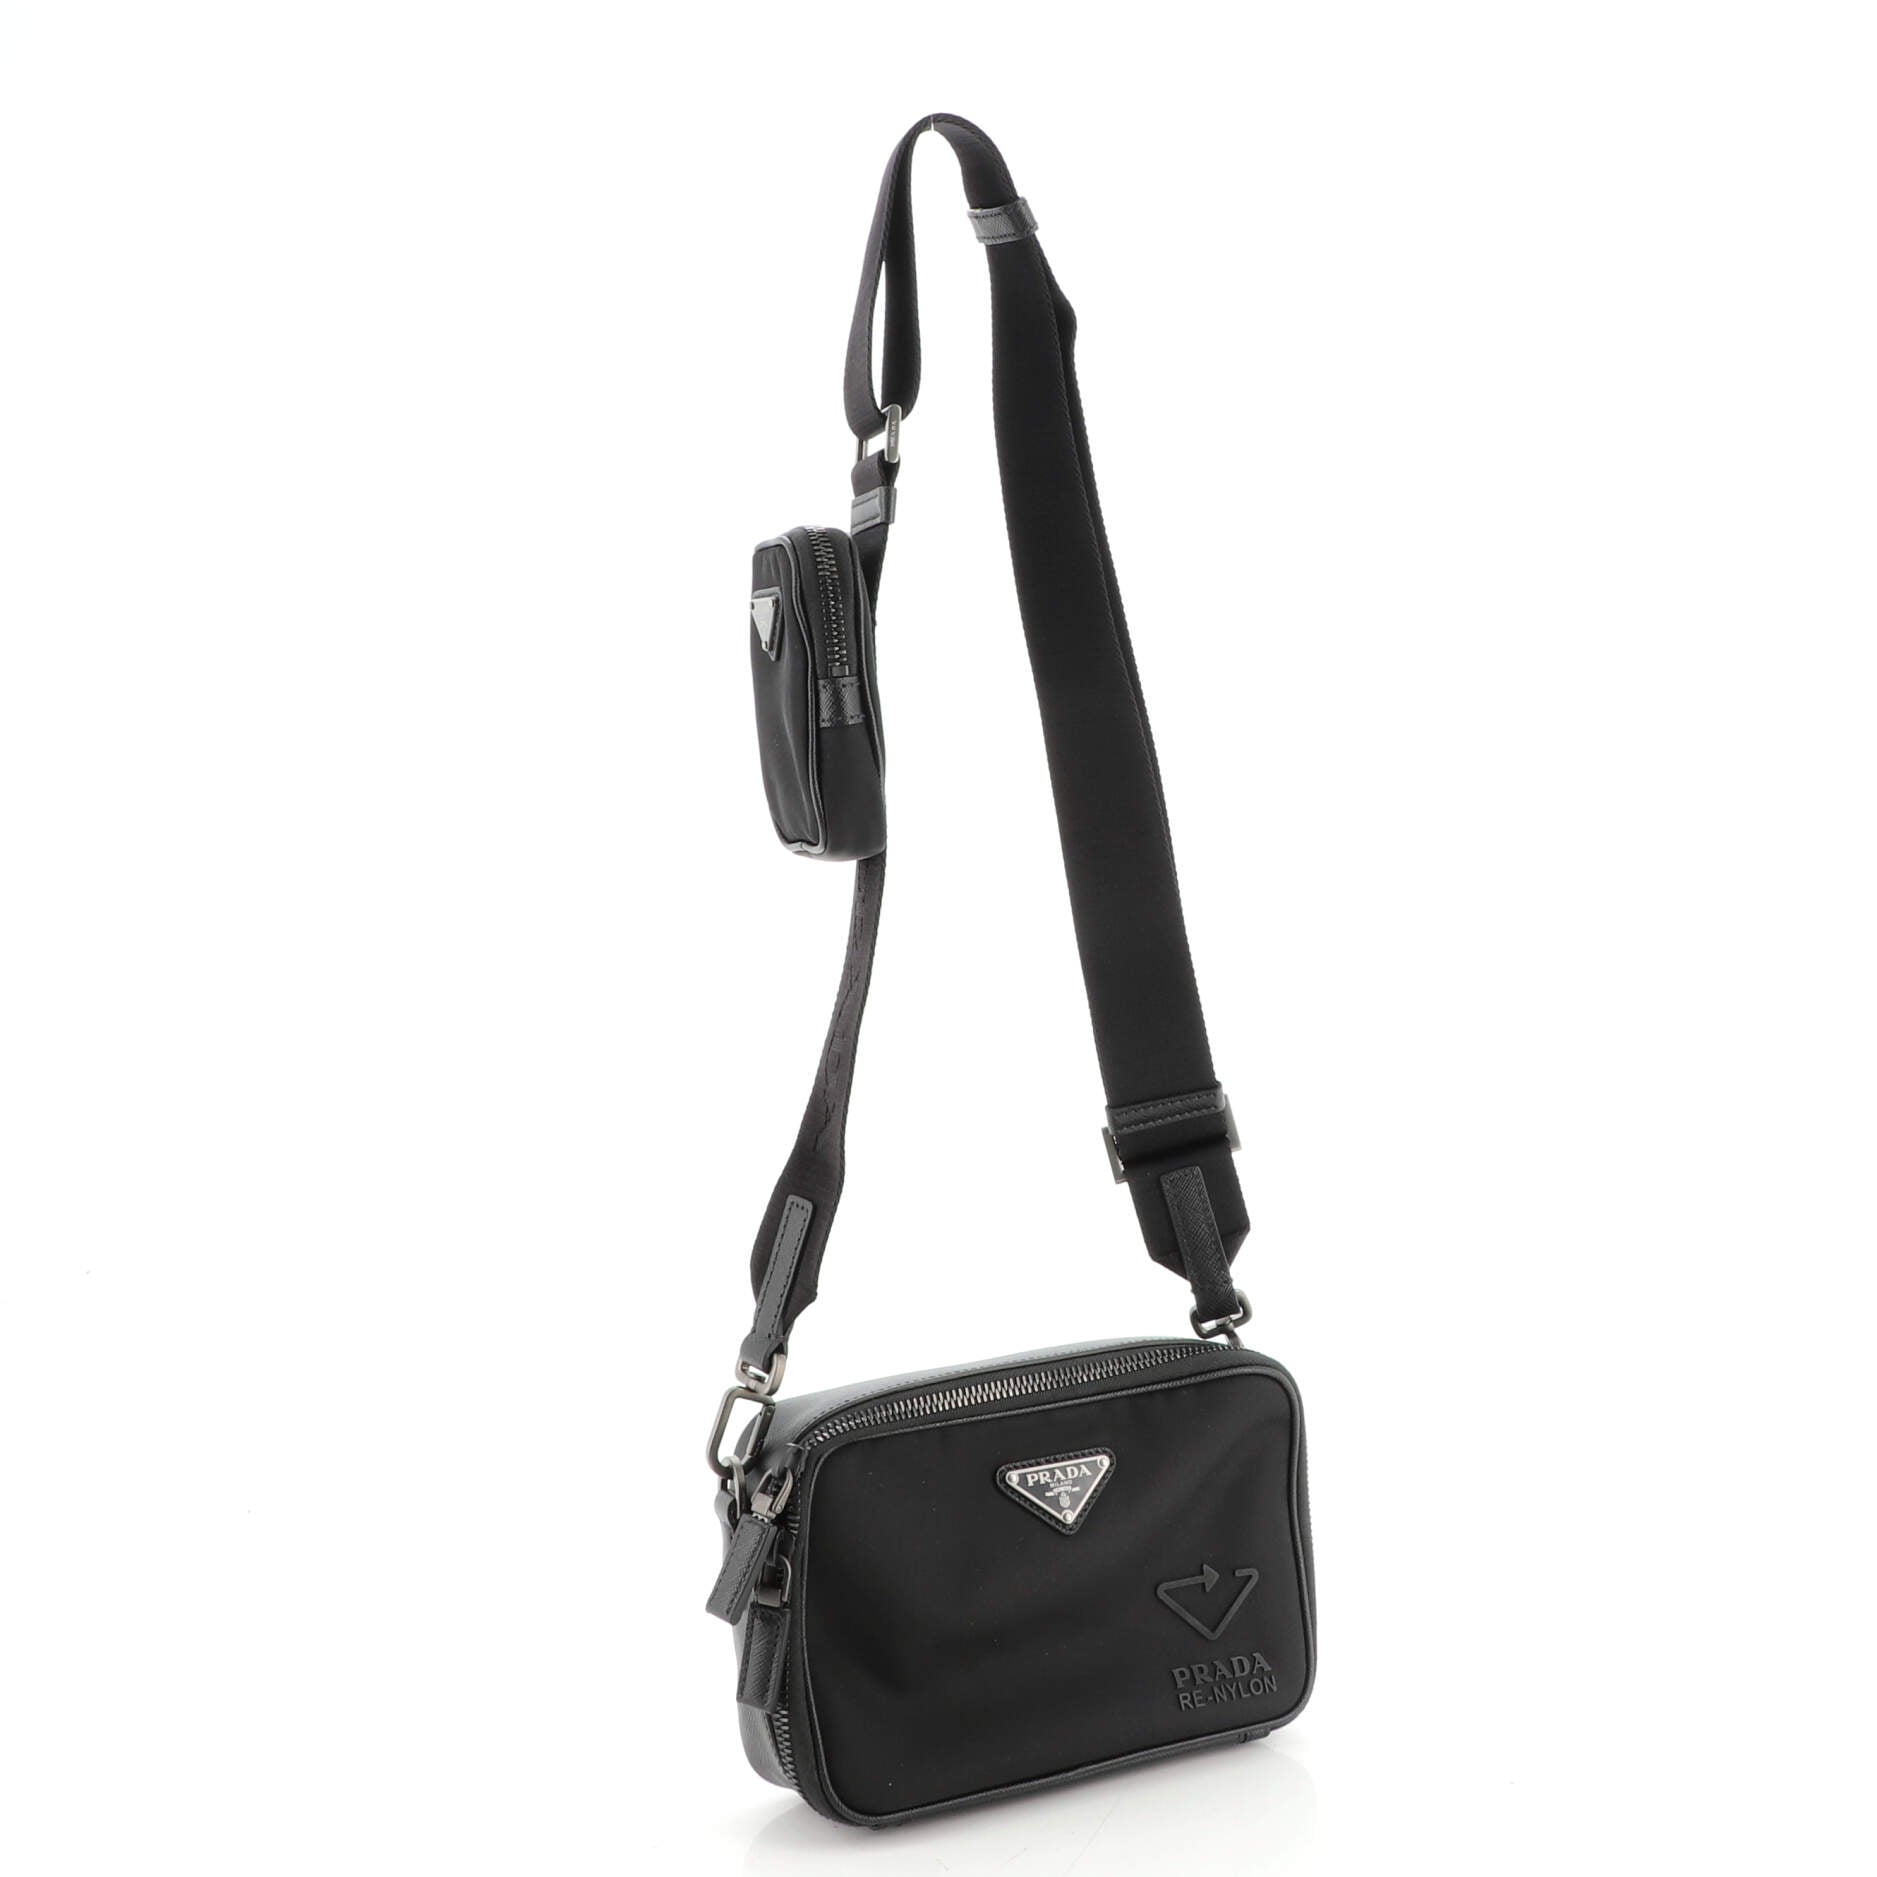 Prada Re-Nylon and Saffiano leather shoulder bag Crossbody